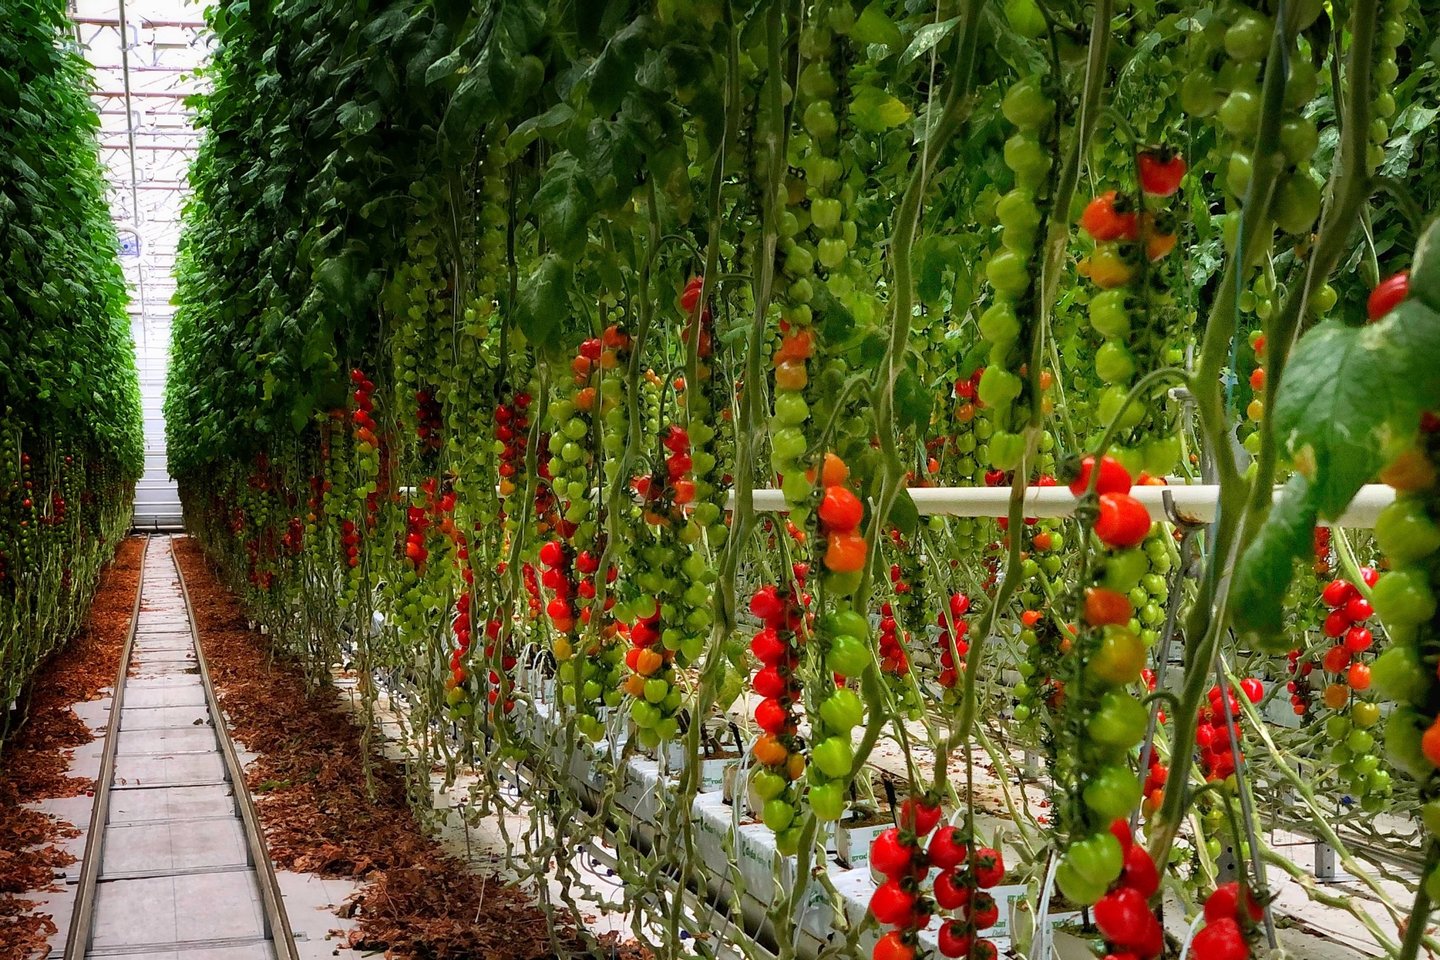 Netoli Elektrėnų įsikūrę „Kietaviškių gausos“ šiltnamiai yra vieni unikaliausių Europos šiltnamių, kuriuose kasmet užauginama iki 17 skirtingų pomidorų veislių.